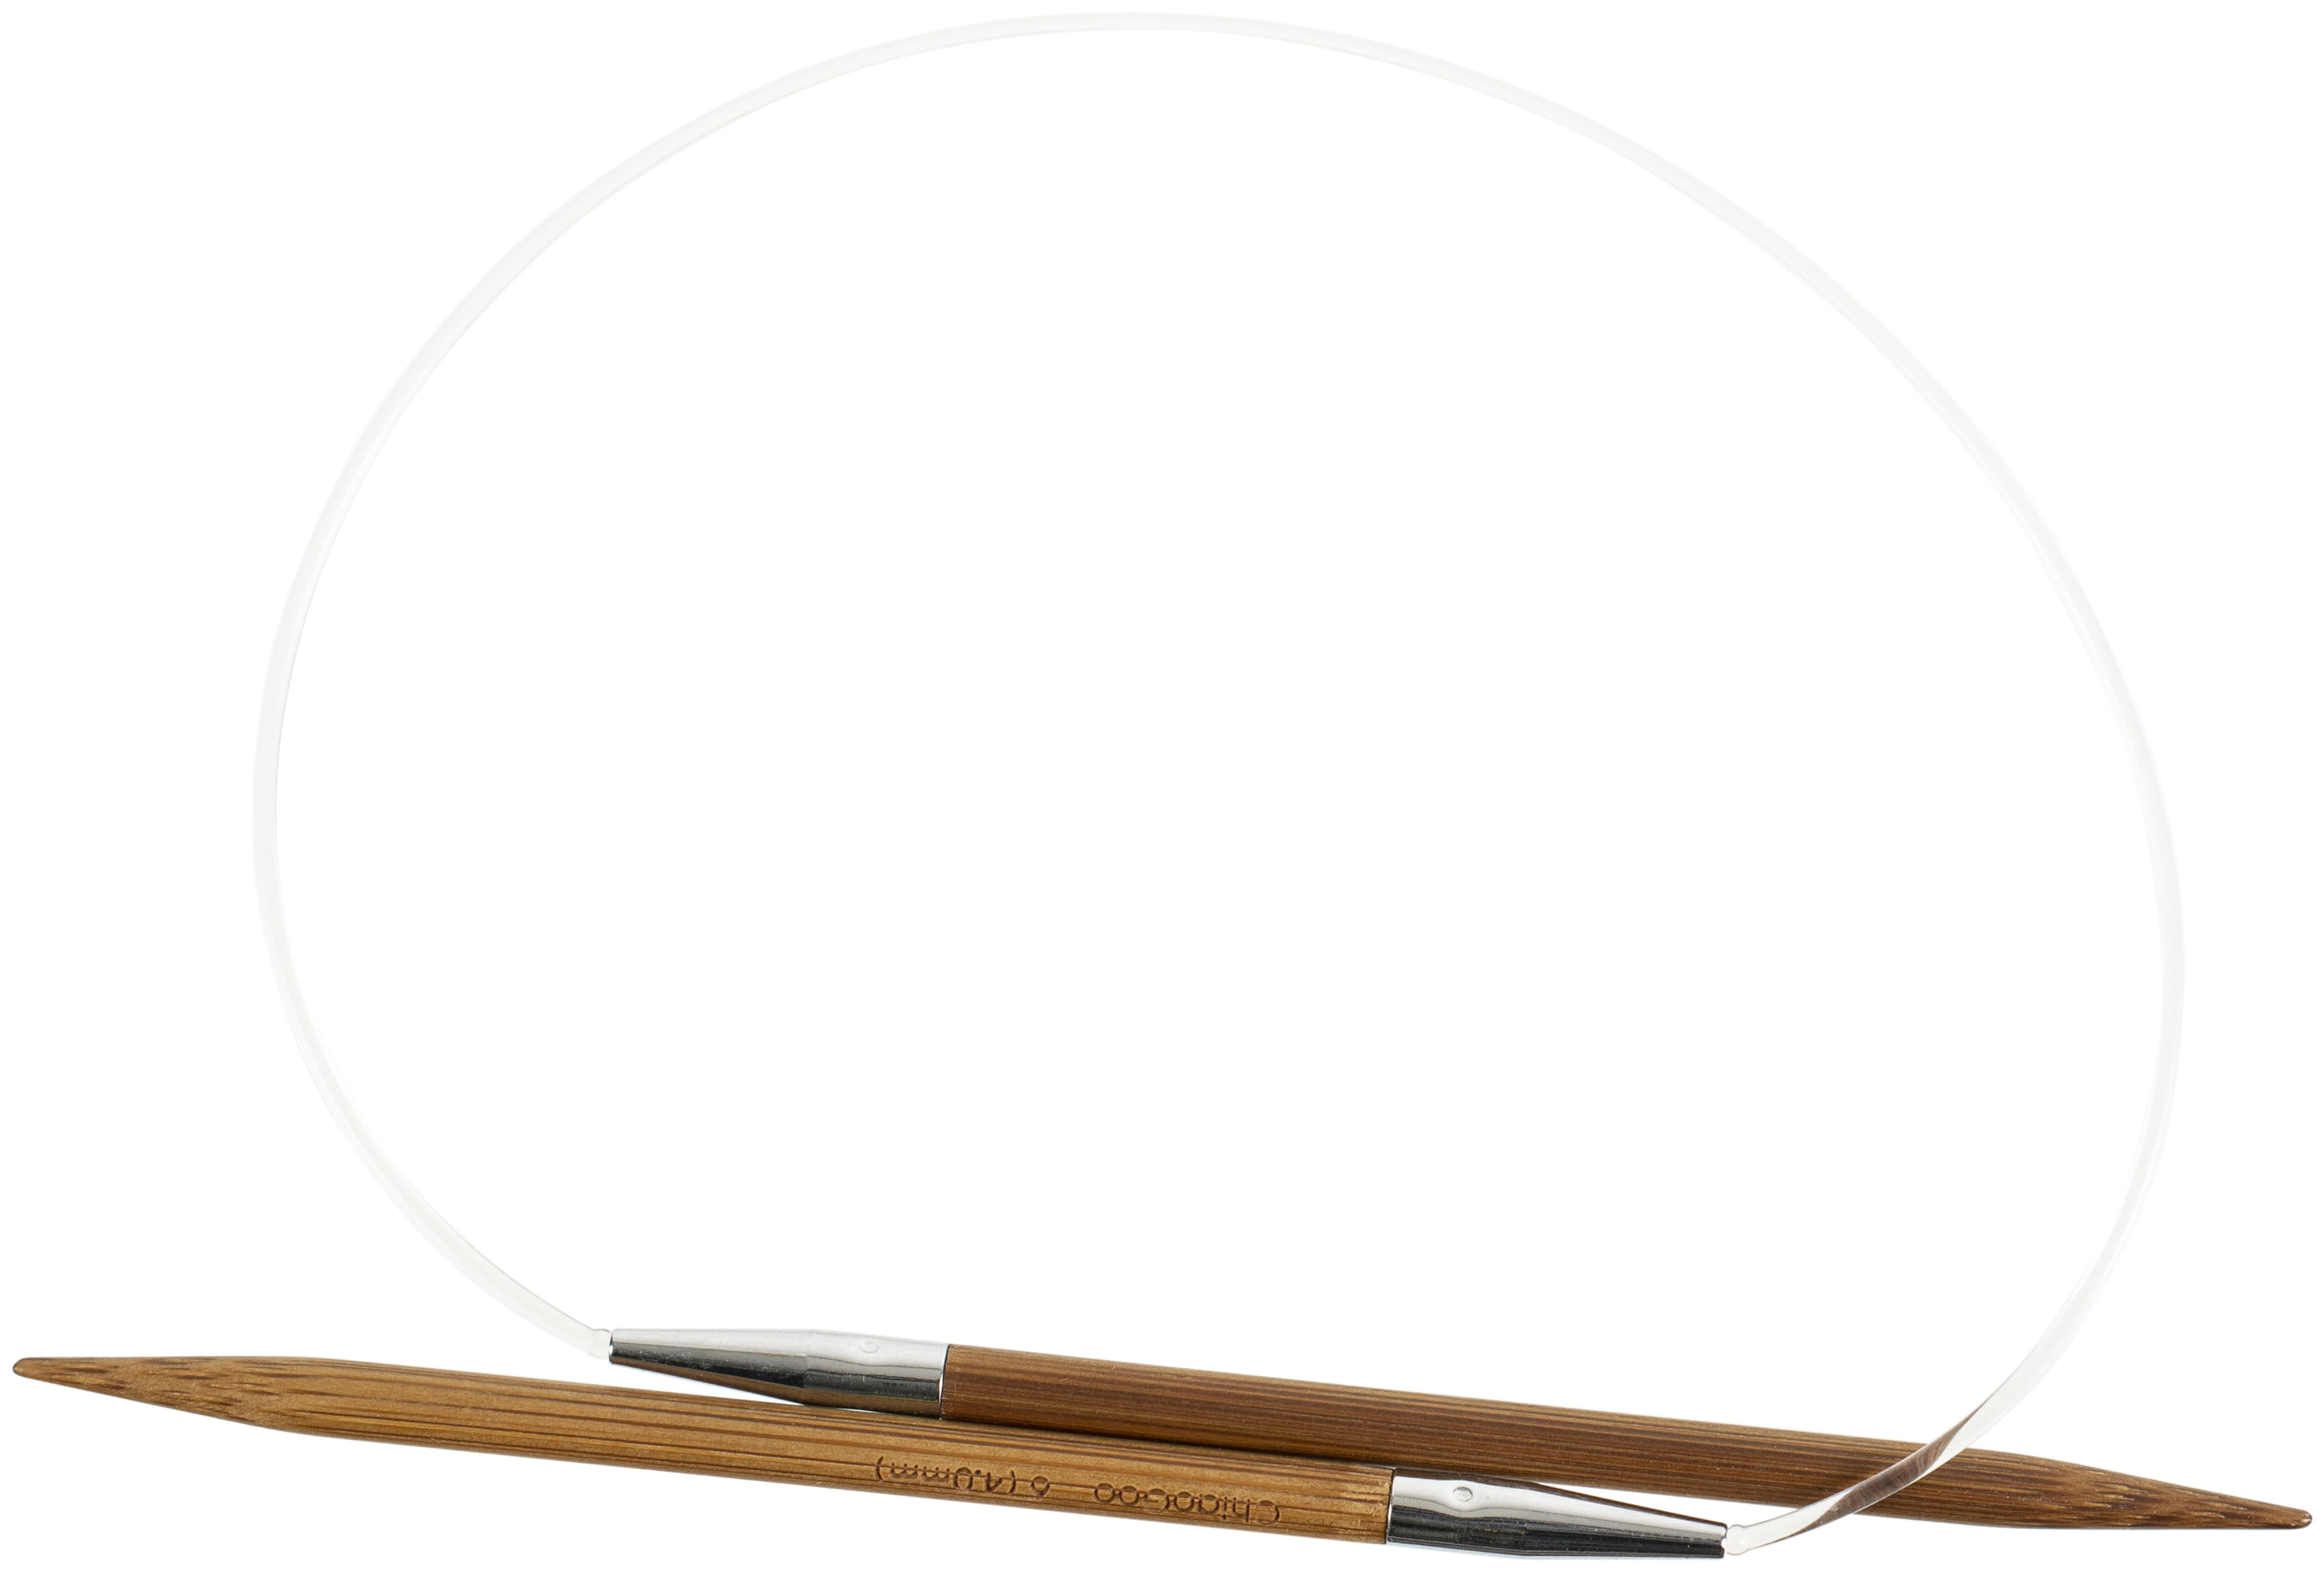 ChiaoGoo Bamboo Circular Knitting Needles: 40 Inch (100 cm) Cable